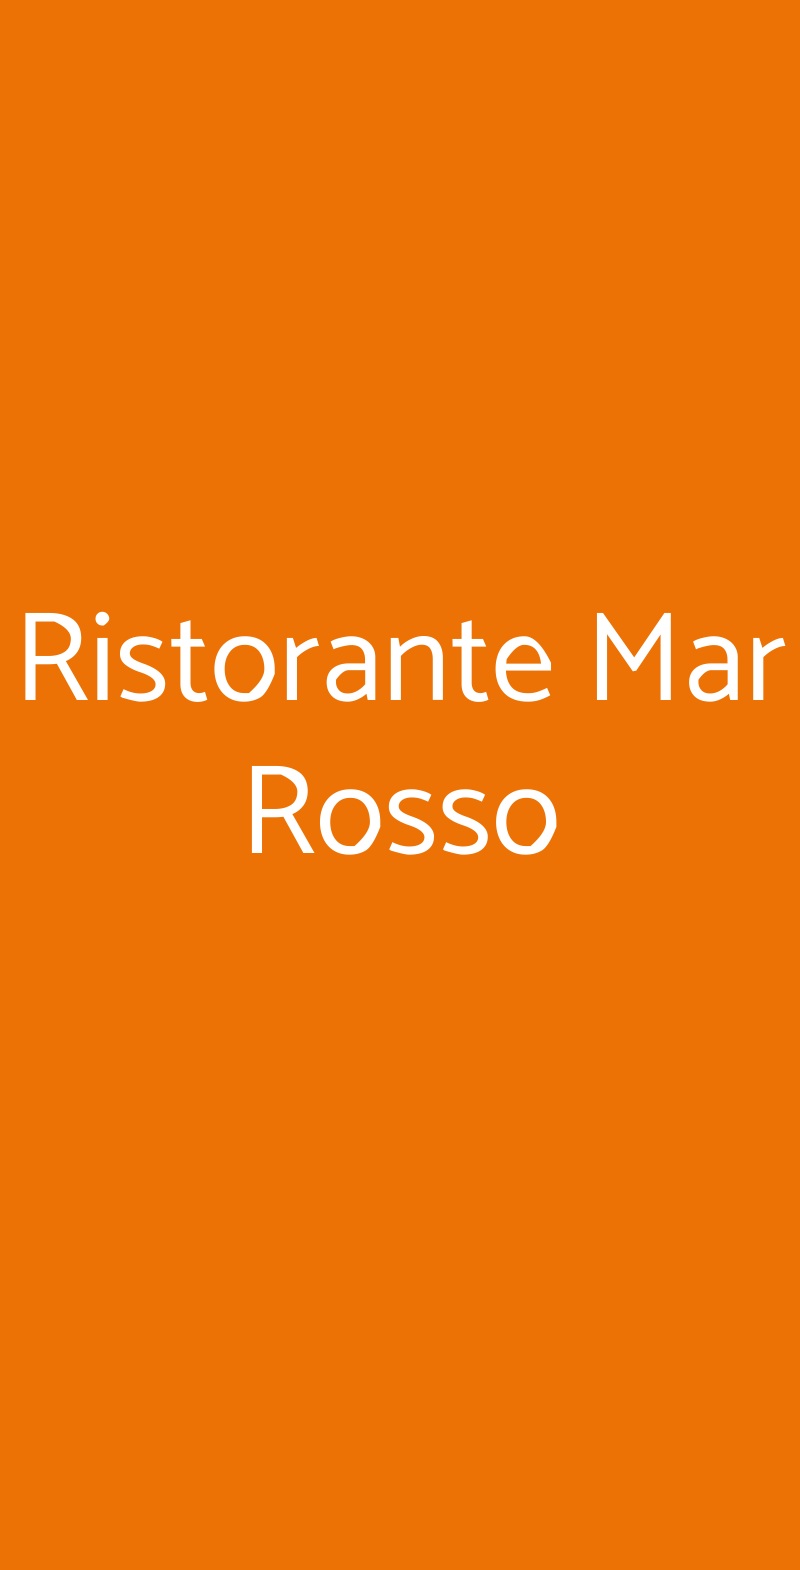 Ristorante Mar Rosso Milano menù 1 pagina